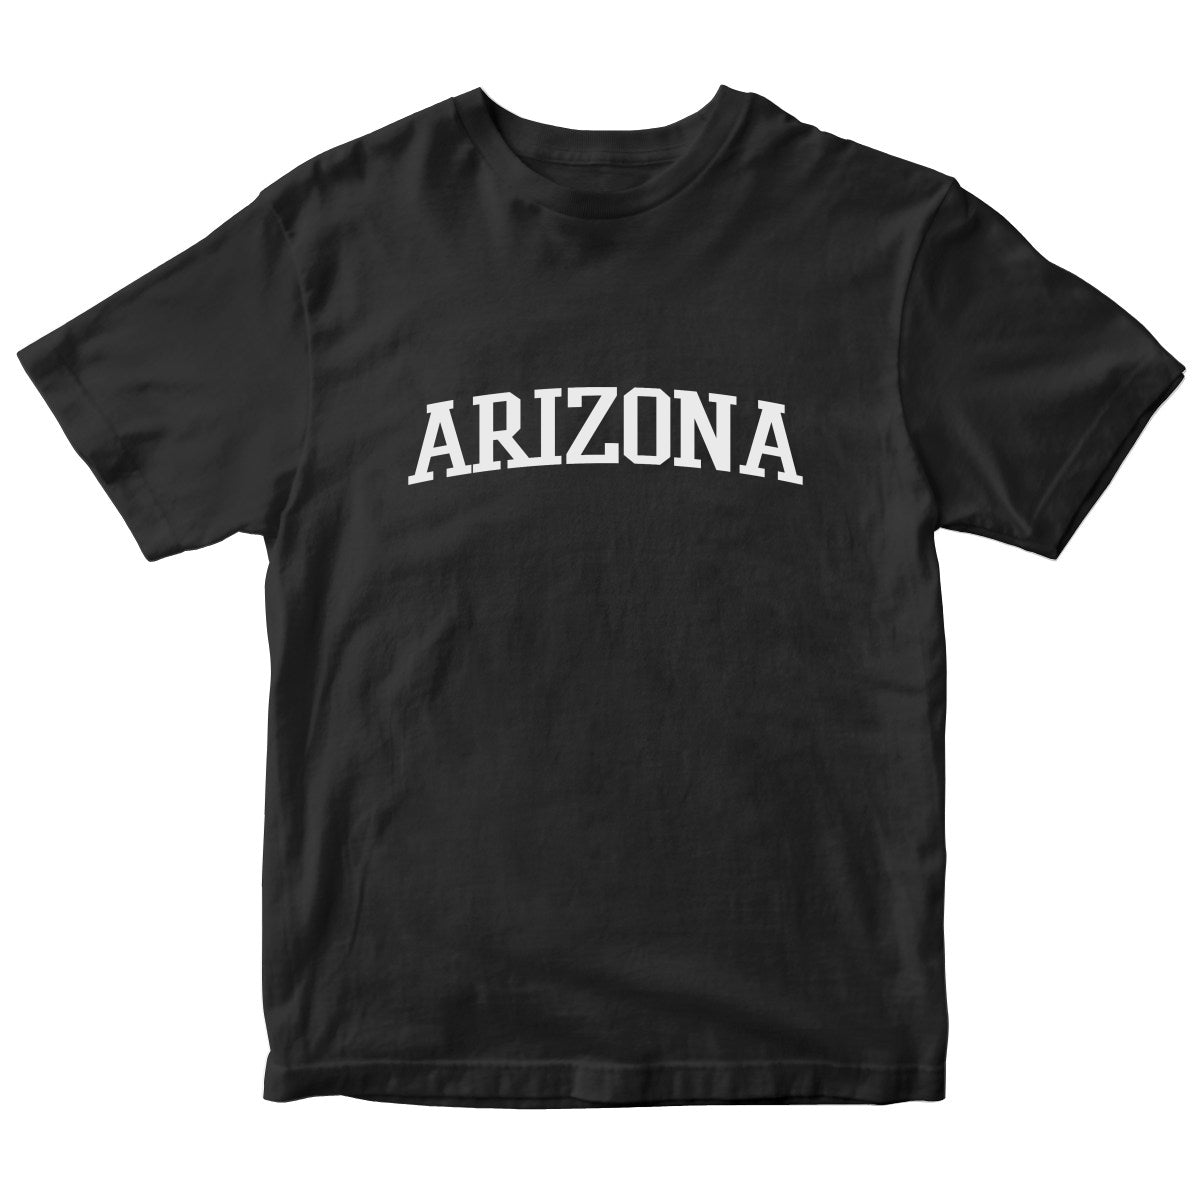 Arizona Kids T-shirt